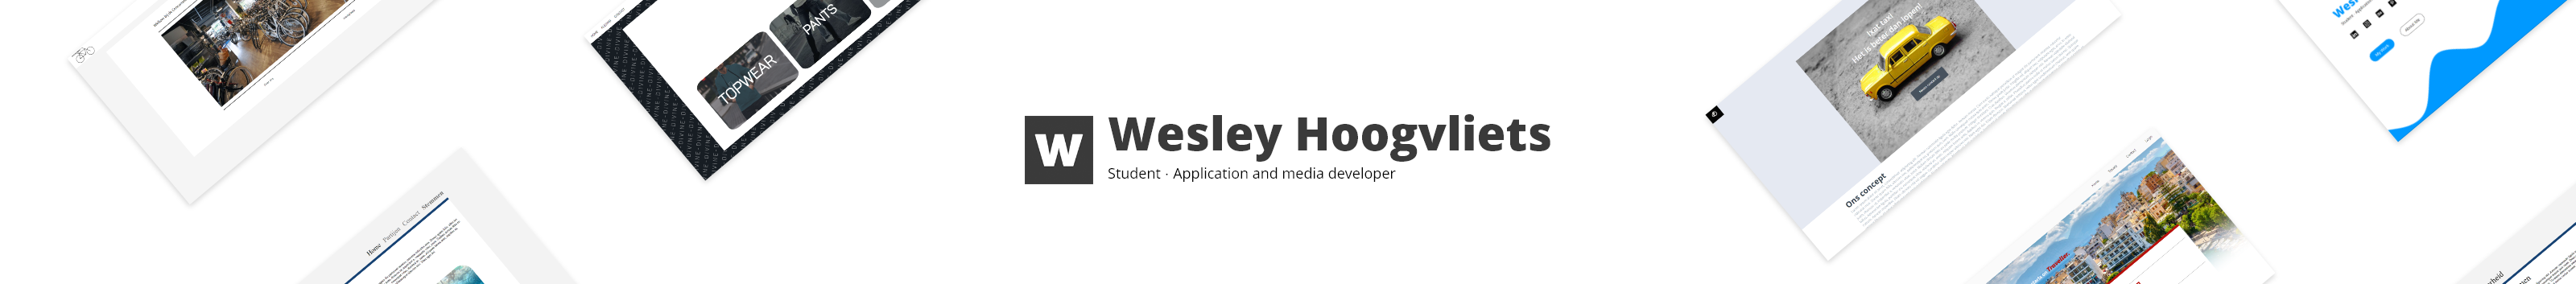 Wesley Hoogvliets's profile banner